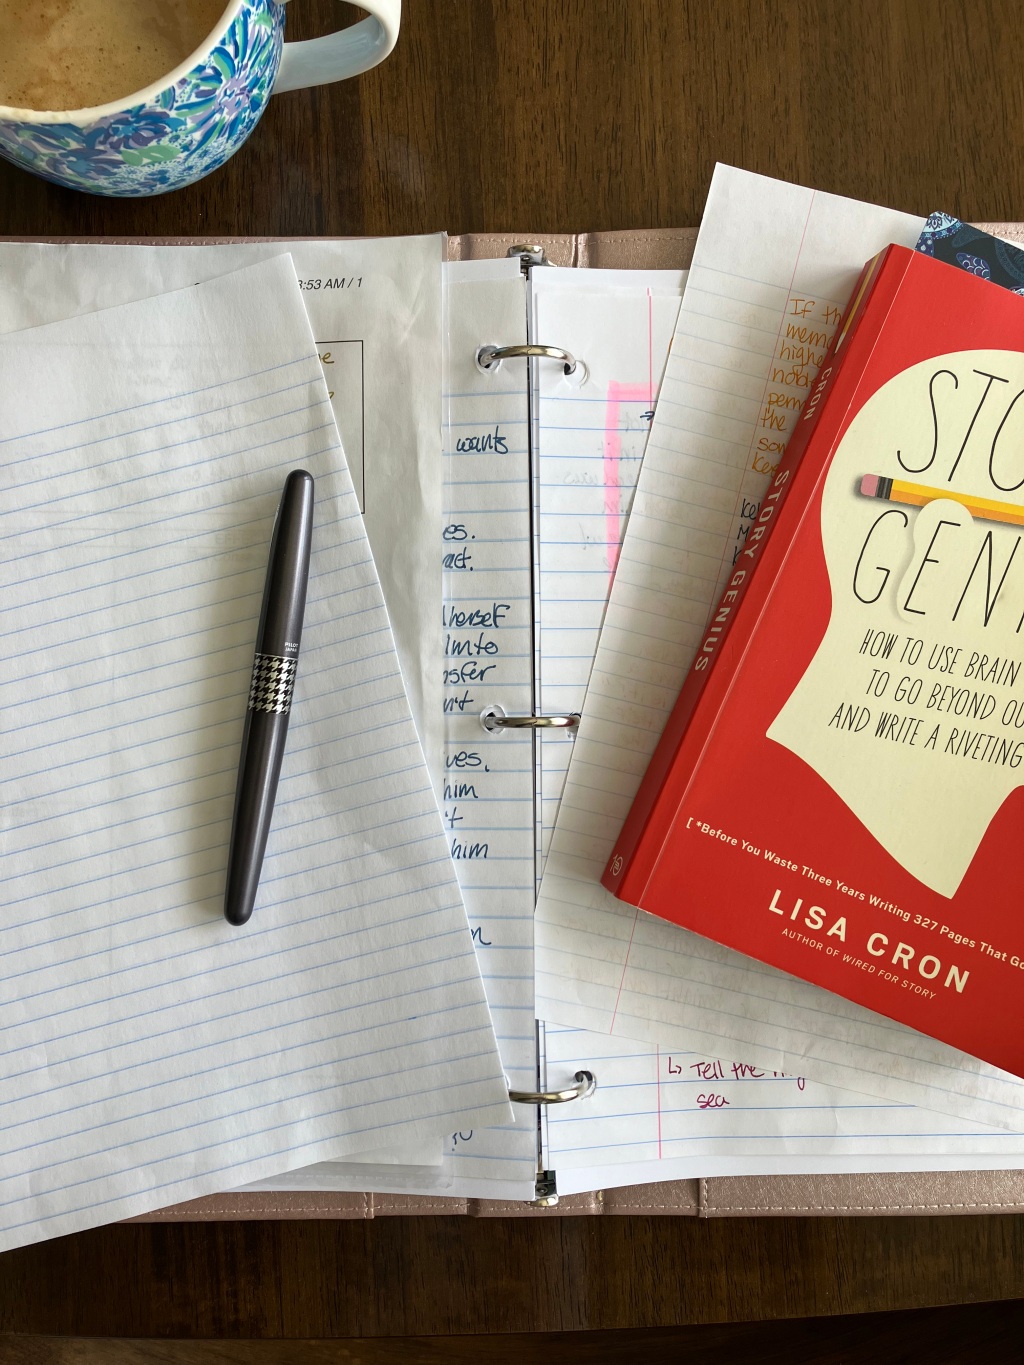 How to Write a Novel: Brainstorming Ideas